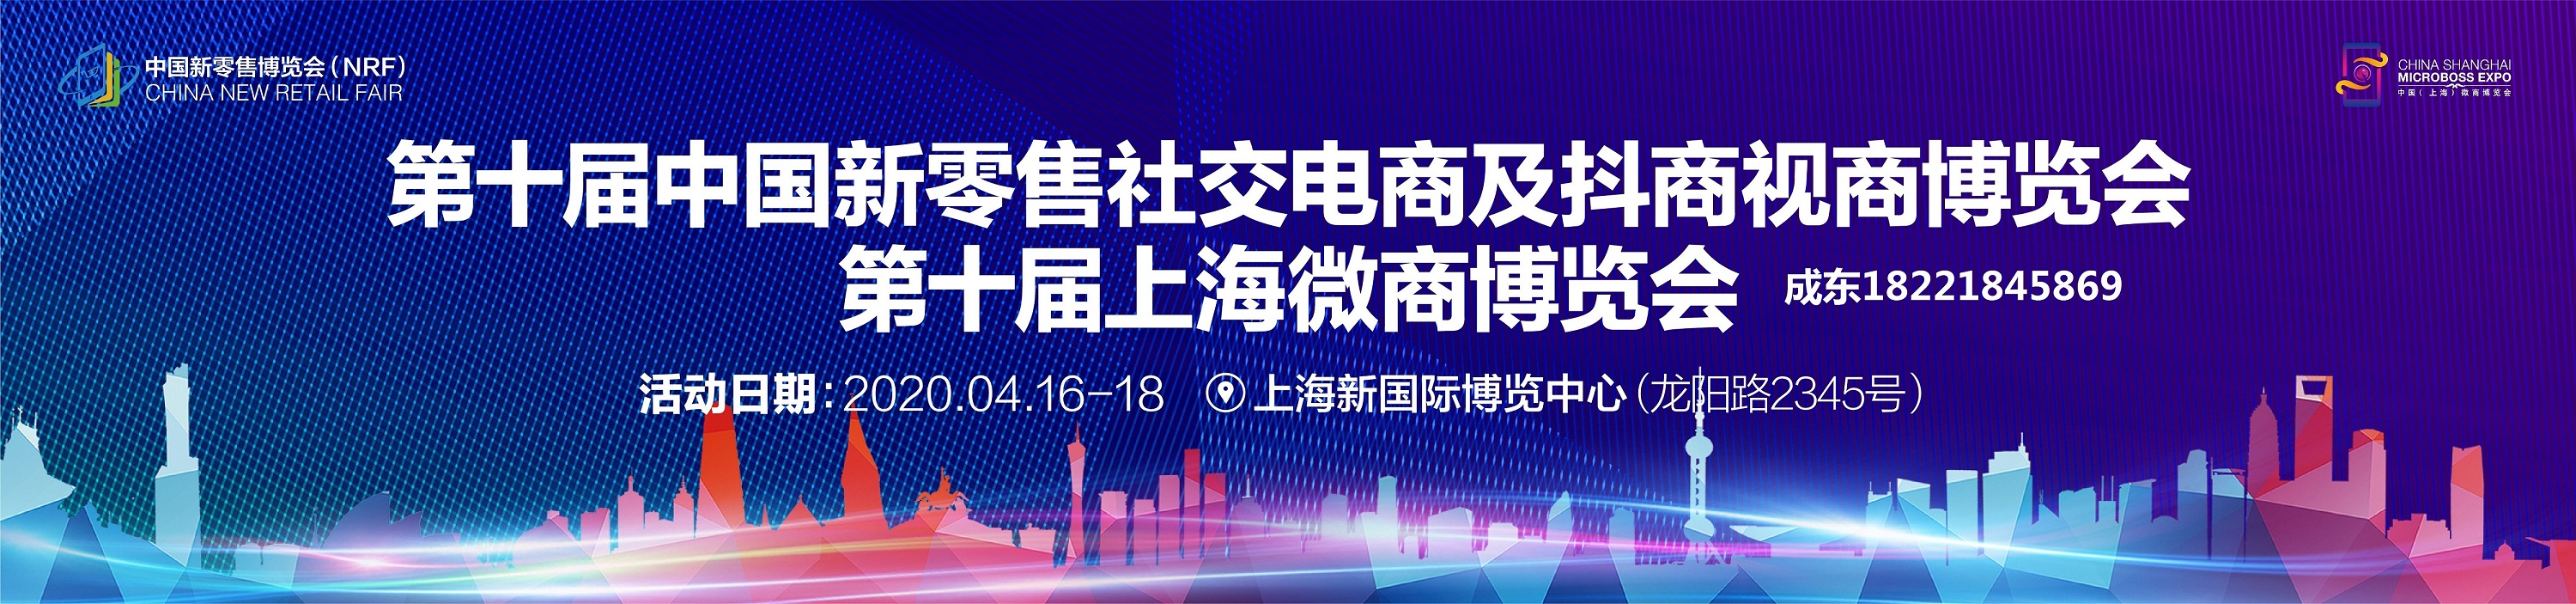 2020*10届中国新零售社交电商及抖商视商博览会